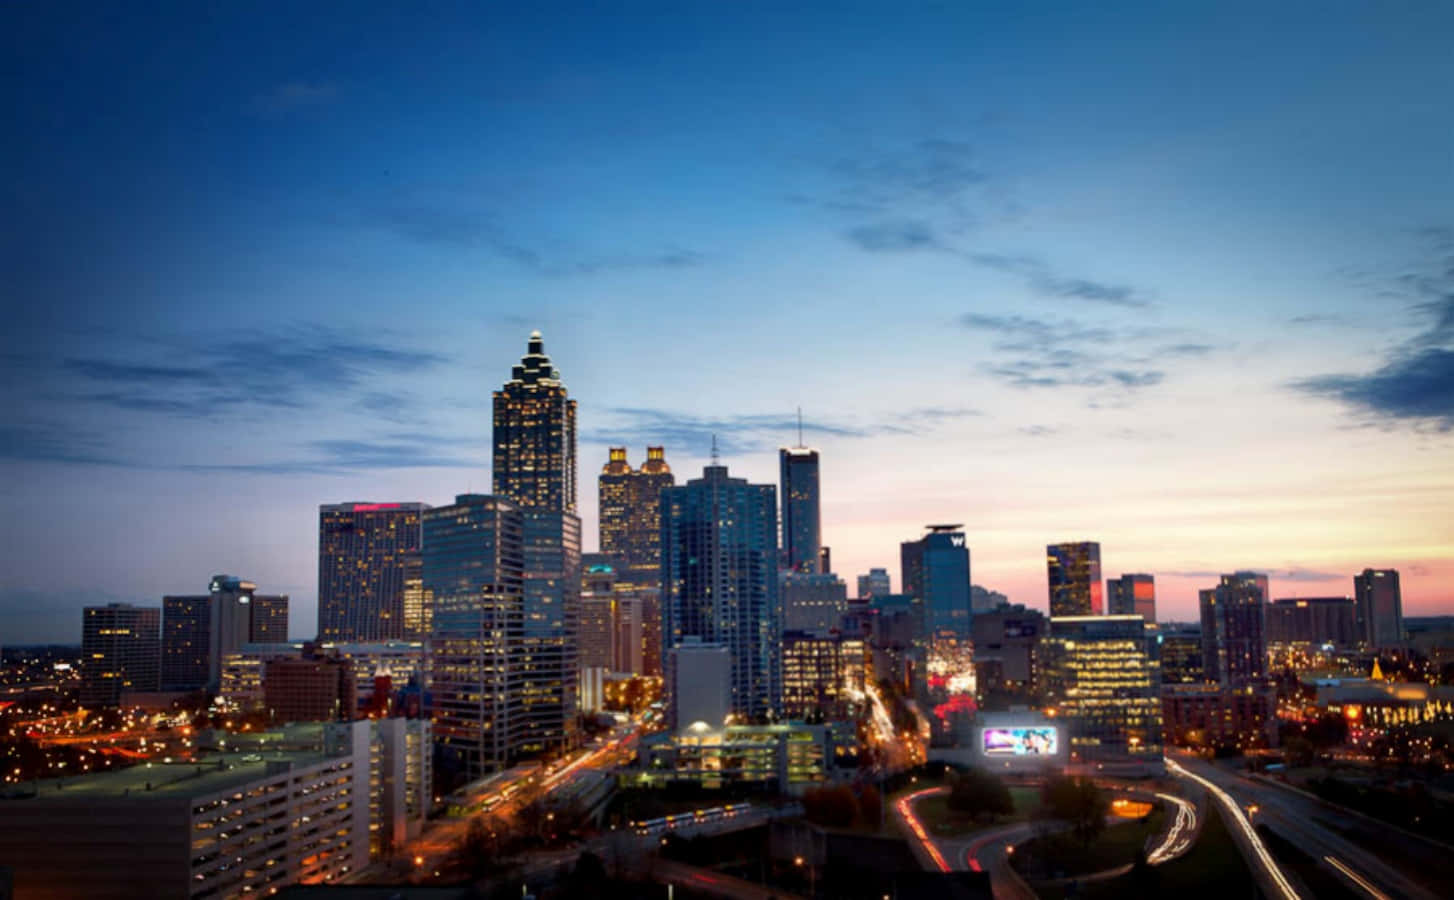 Welcome to Atlanta, Georgia